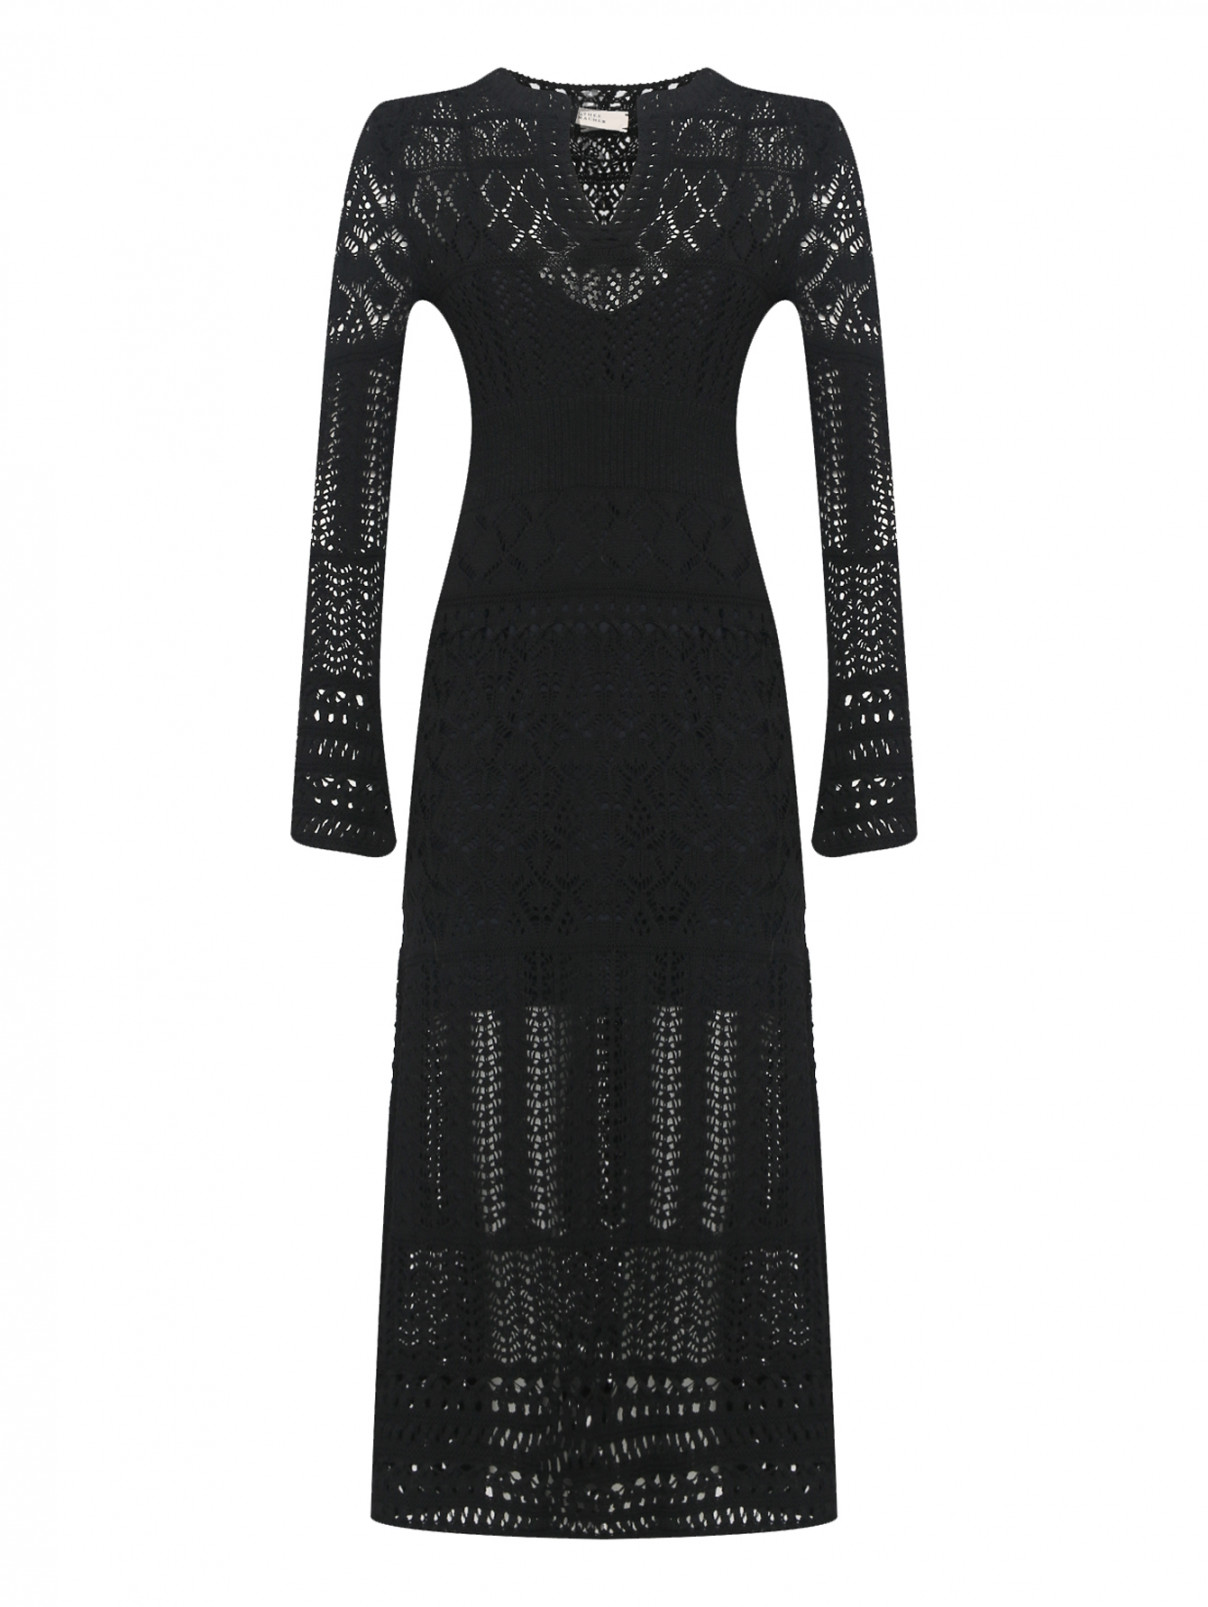 Трикотажное платье ажурной вязки Dorothee Schumacher  –  Общий вид  – Цвет:  Черный